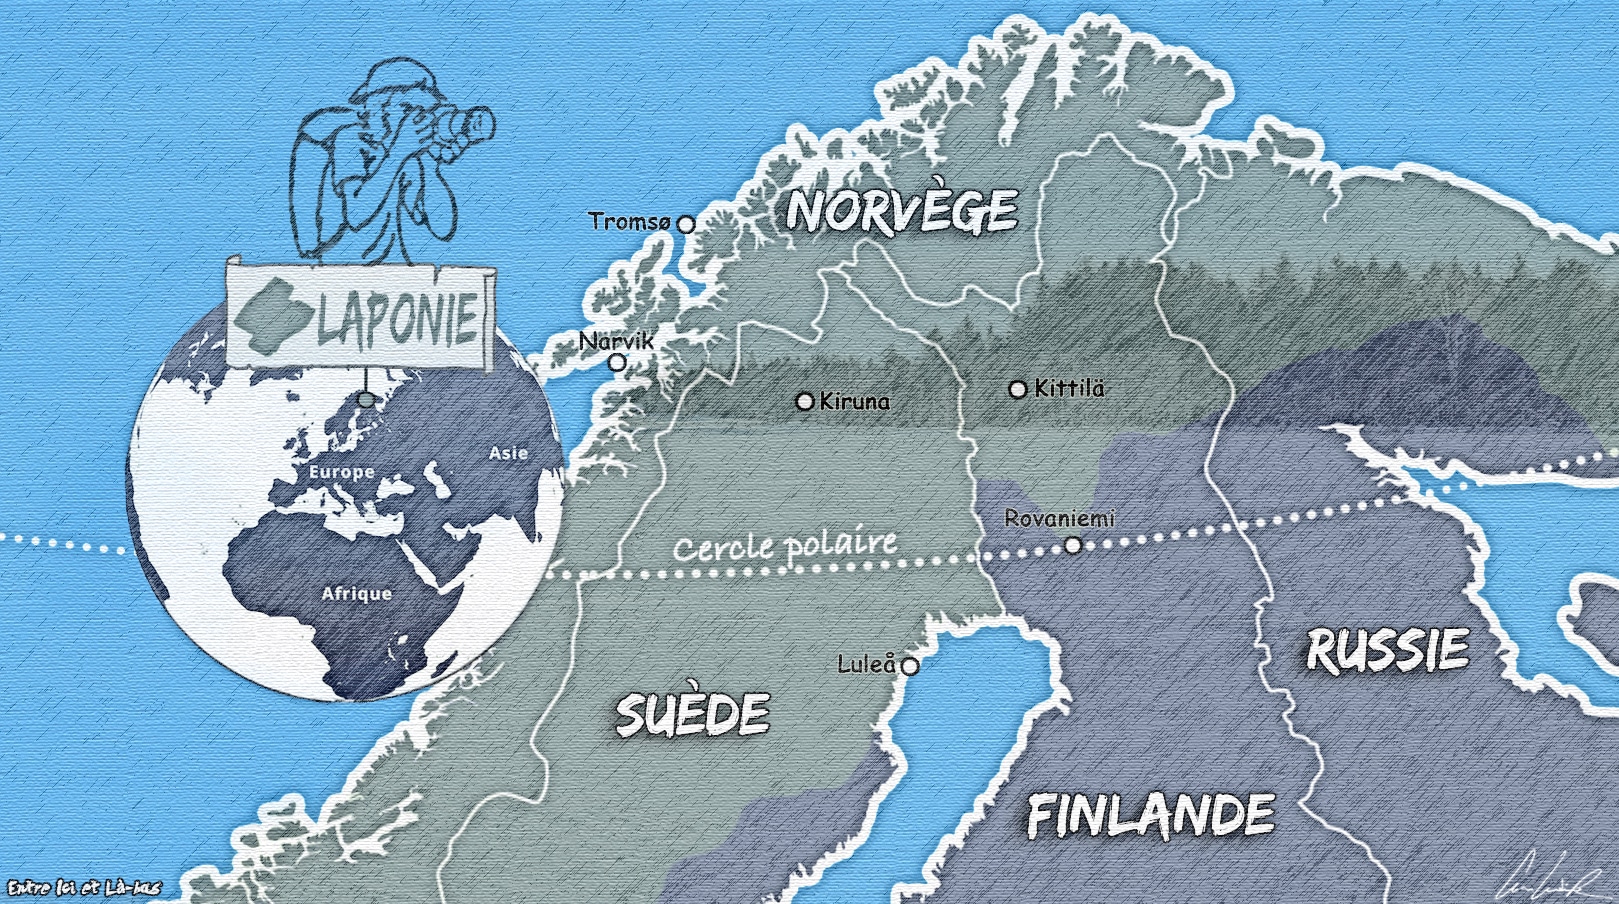 Voici une carte de la Laponie qui n’est pas un pays mais une région arctique s’étendant sur plusieurs pays nord européens: la Finlande, la Norvège, la Suède et la péninsule de Kola en Russie.